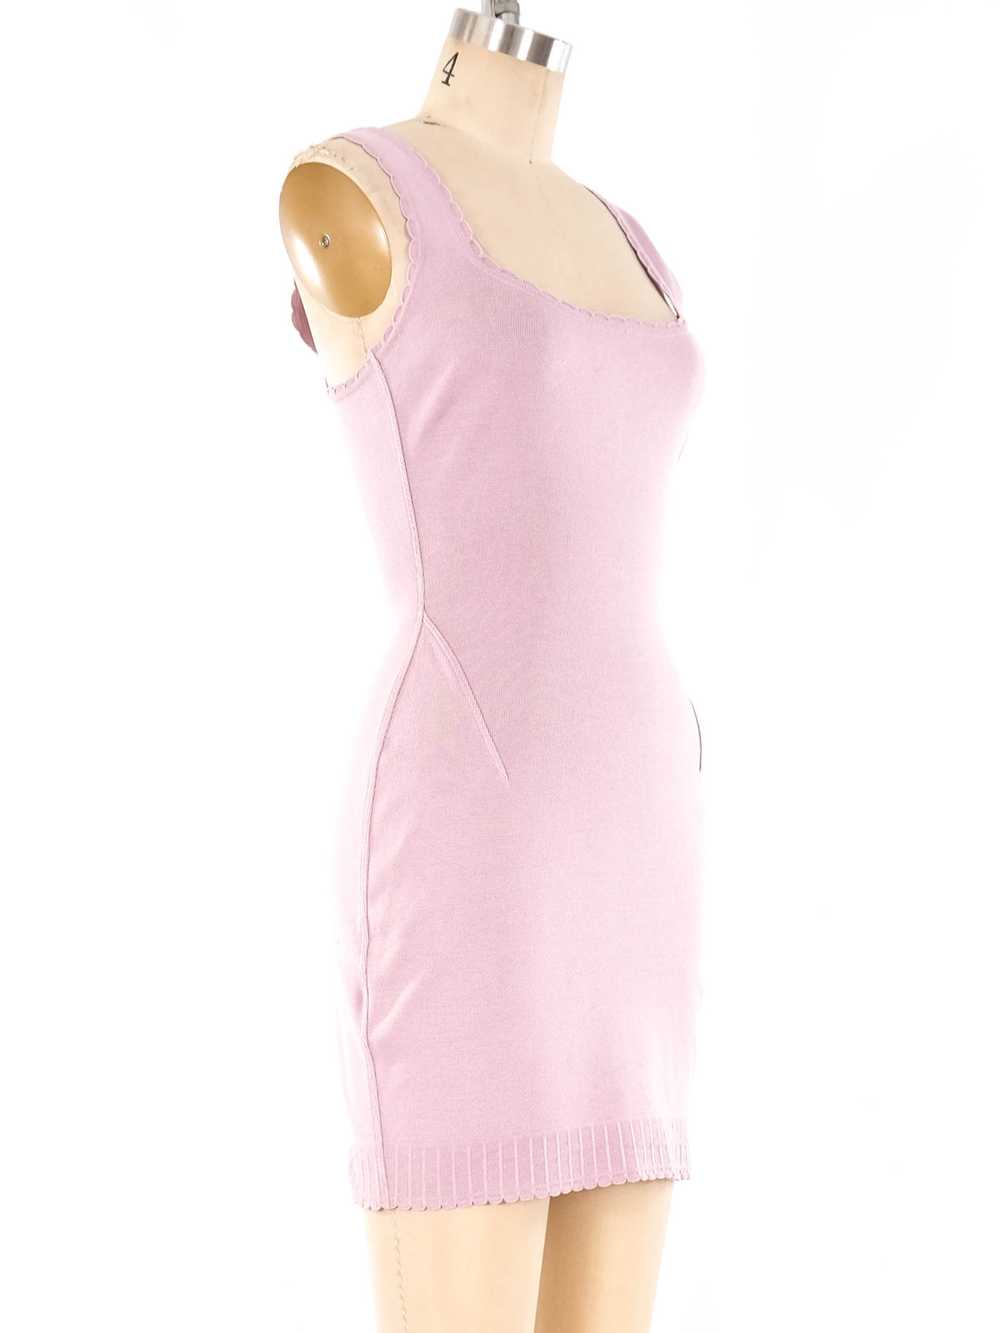 Alaia Lavender Knit Tank Dress - image 3